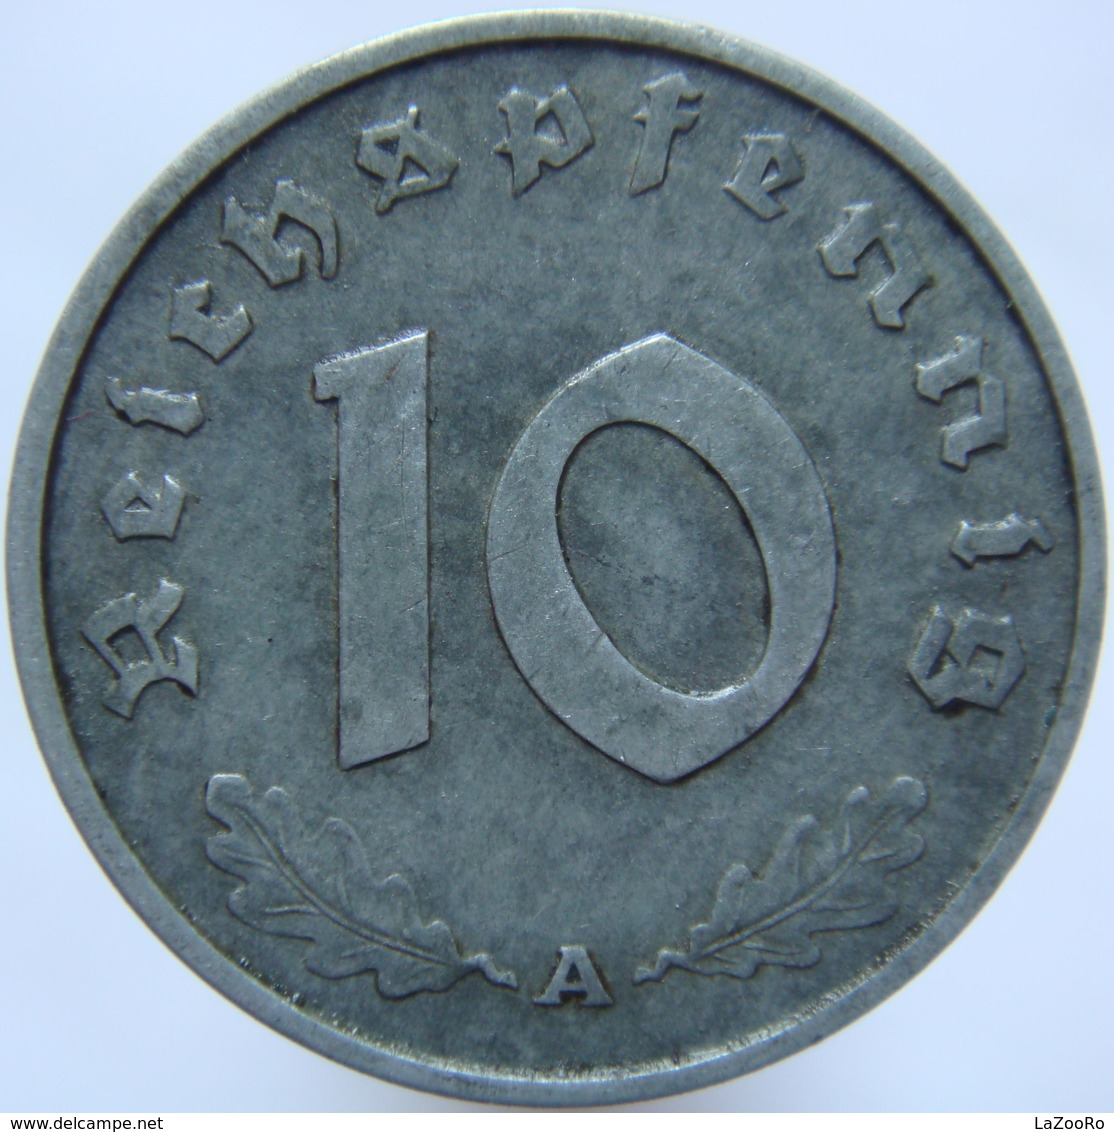 LaZooRo: Germany 10 Pfennig 1943 A XF / UNC - 10 Reichspfennig